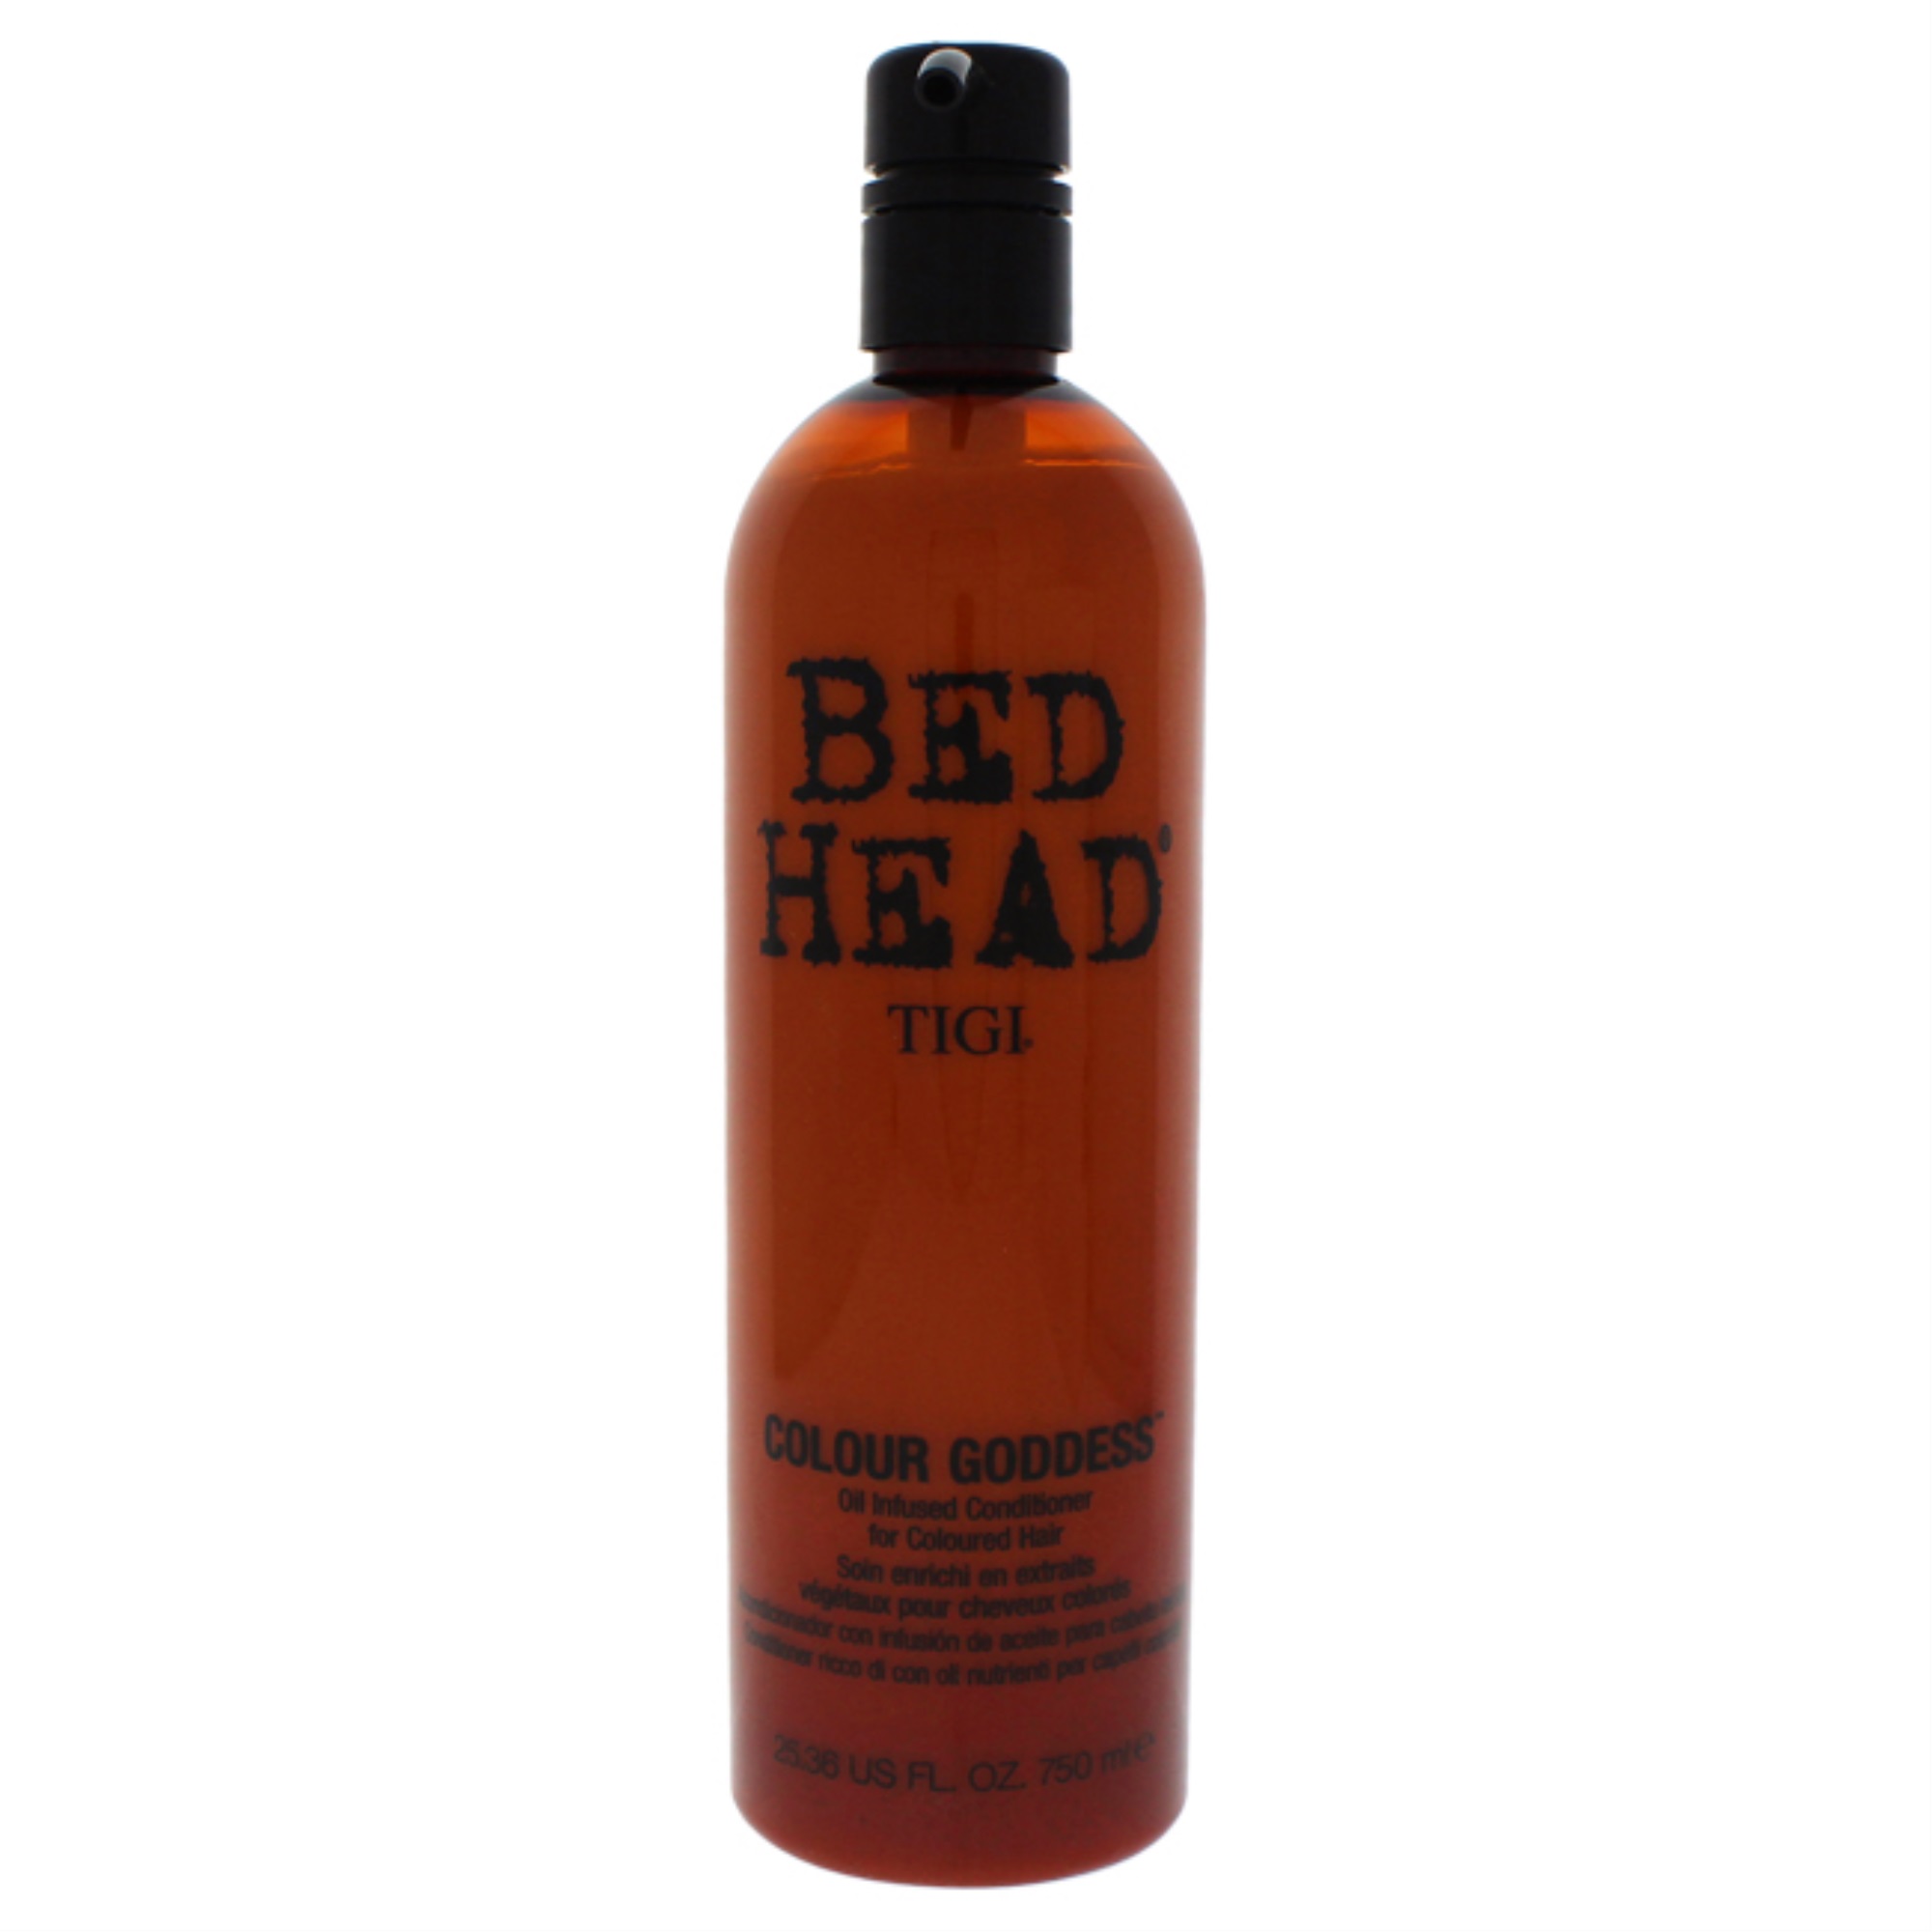 Tigi Bed Head Colour Goddess Oil Infused Conditioner by TIGI for Unisex - 25.36 oz Conditioner